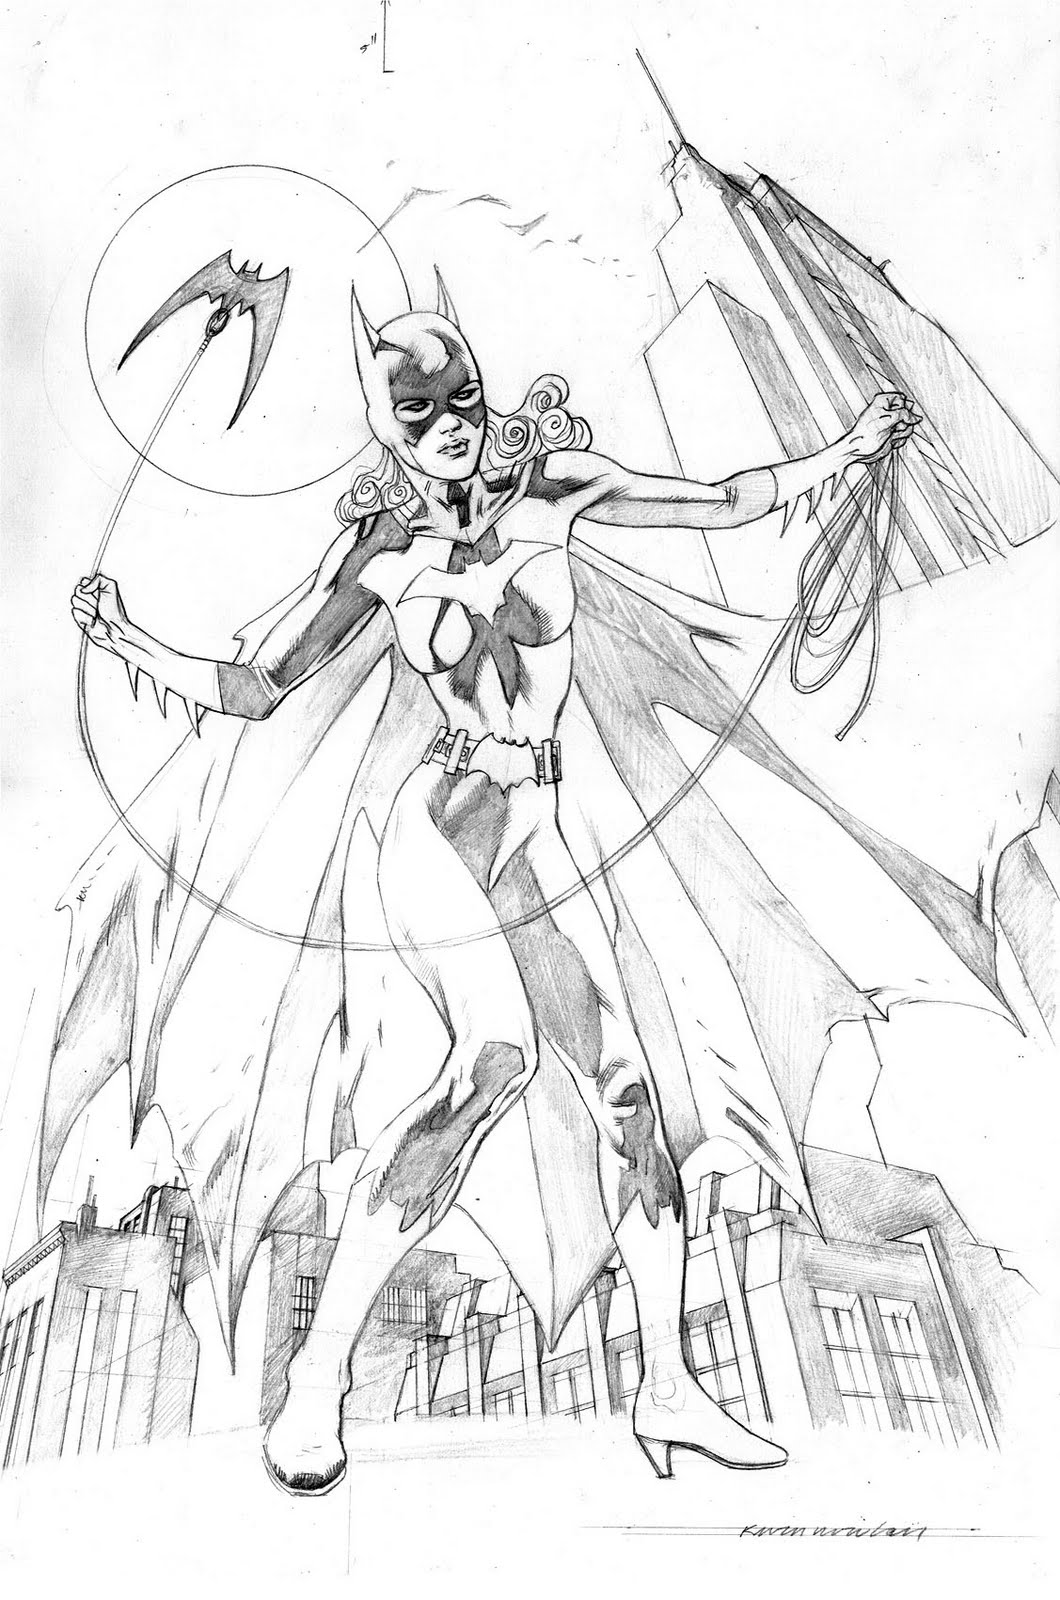 Batgirl | Superhero coloring pages, Superhero coloring ...